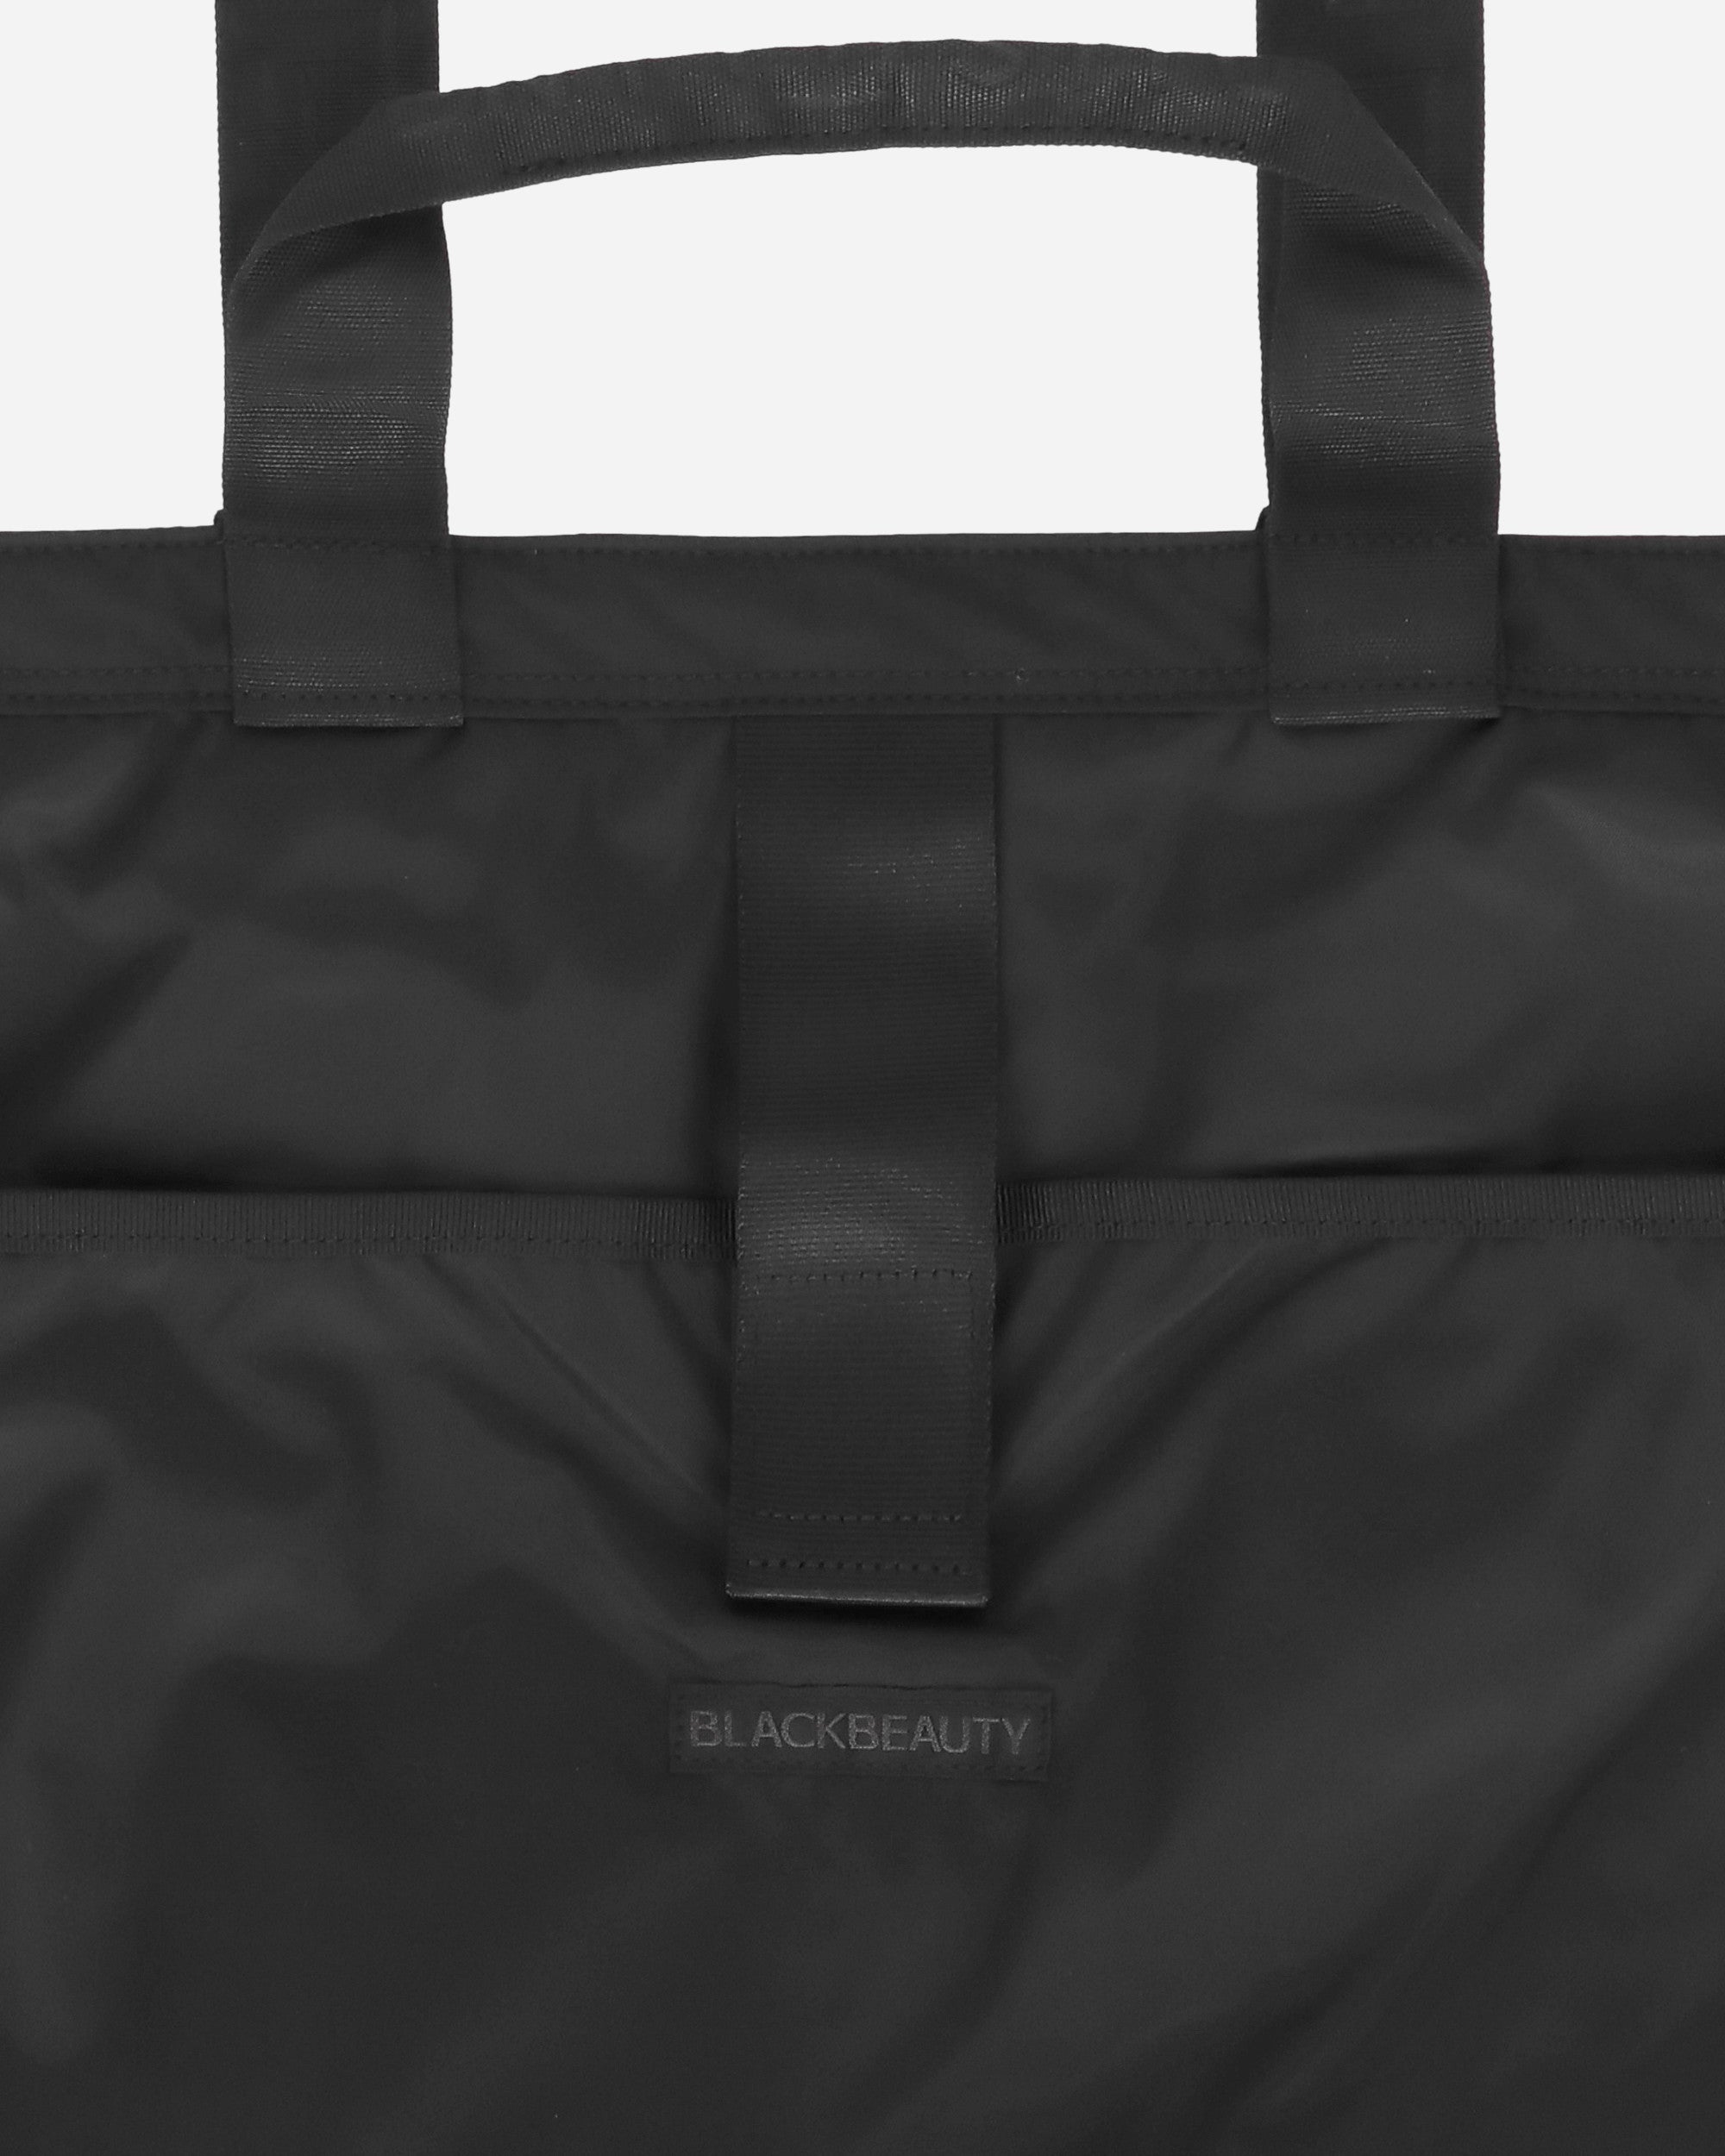 Ramidus Tote Bag (L) X Fragment Design Black Bags and Backpacks Tote B017007 001